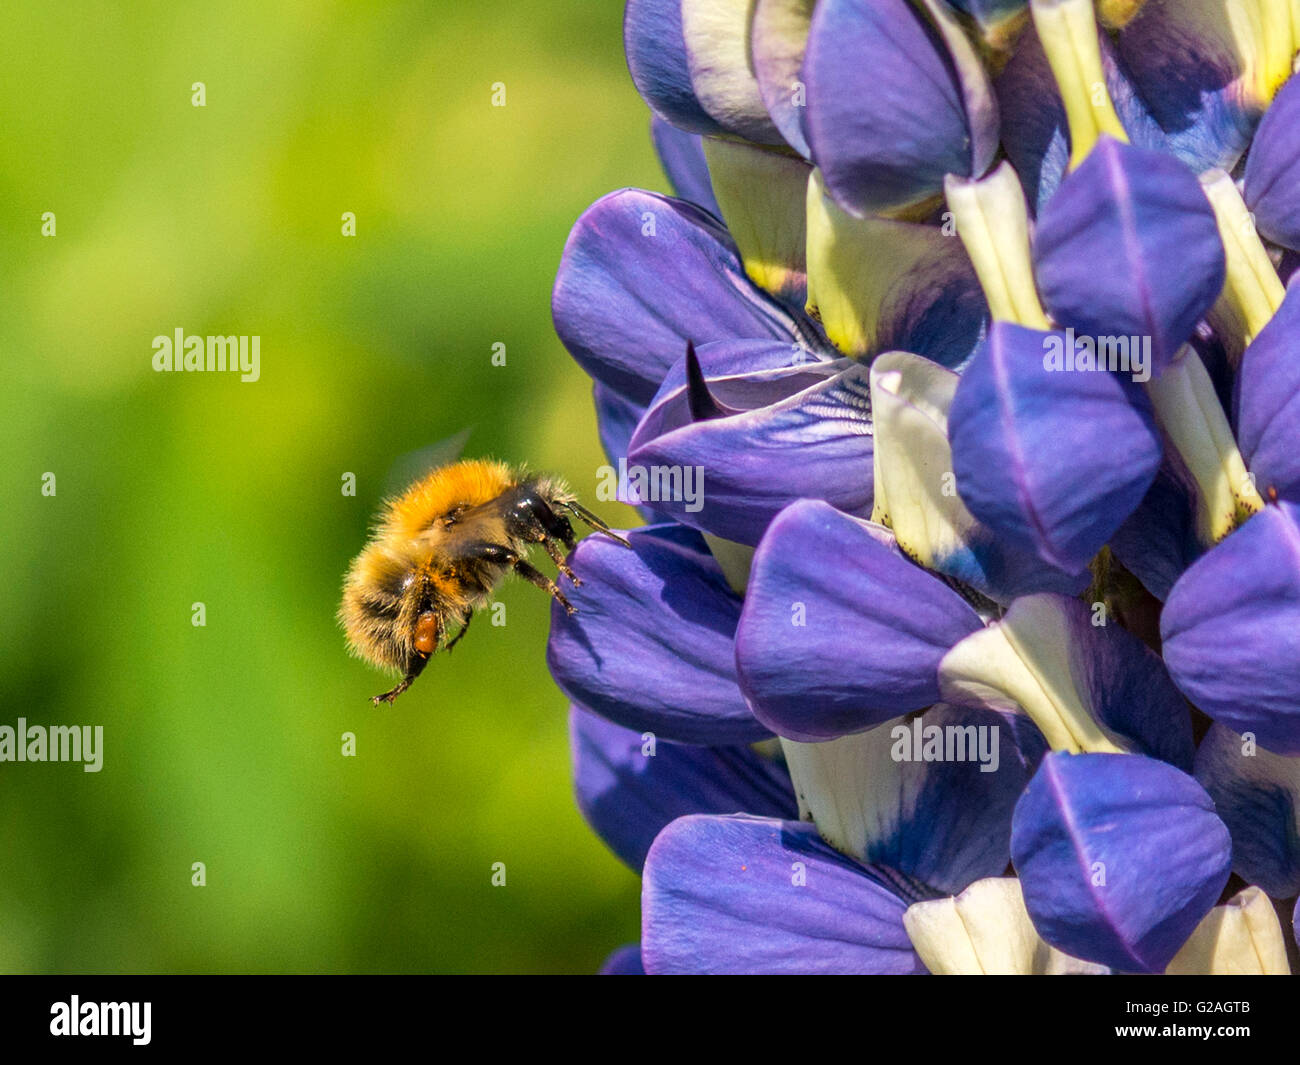 Printemps pollinisateur, bourdon (Bombus) la collecte de nectar de l'épi bleu vif-comme des bourgeons du racème Lupin jardin plante. Banque D'Images